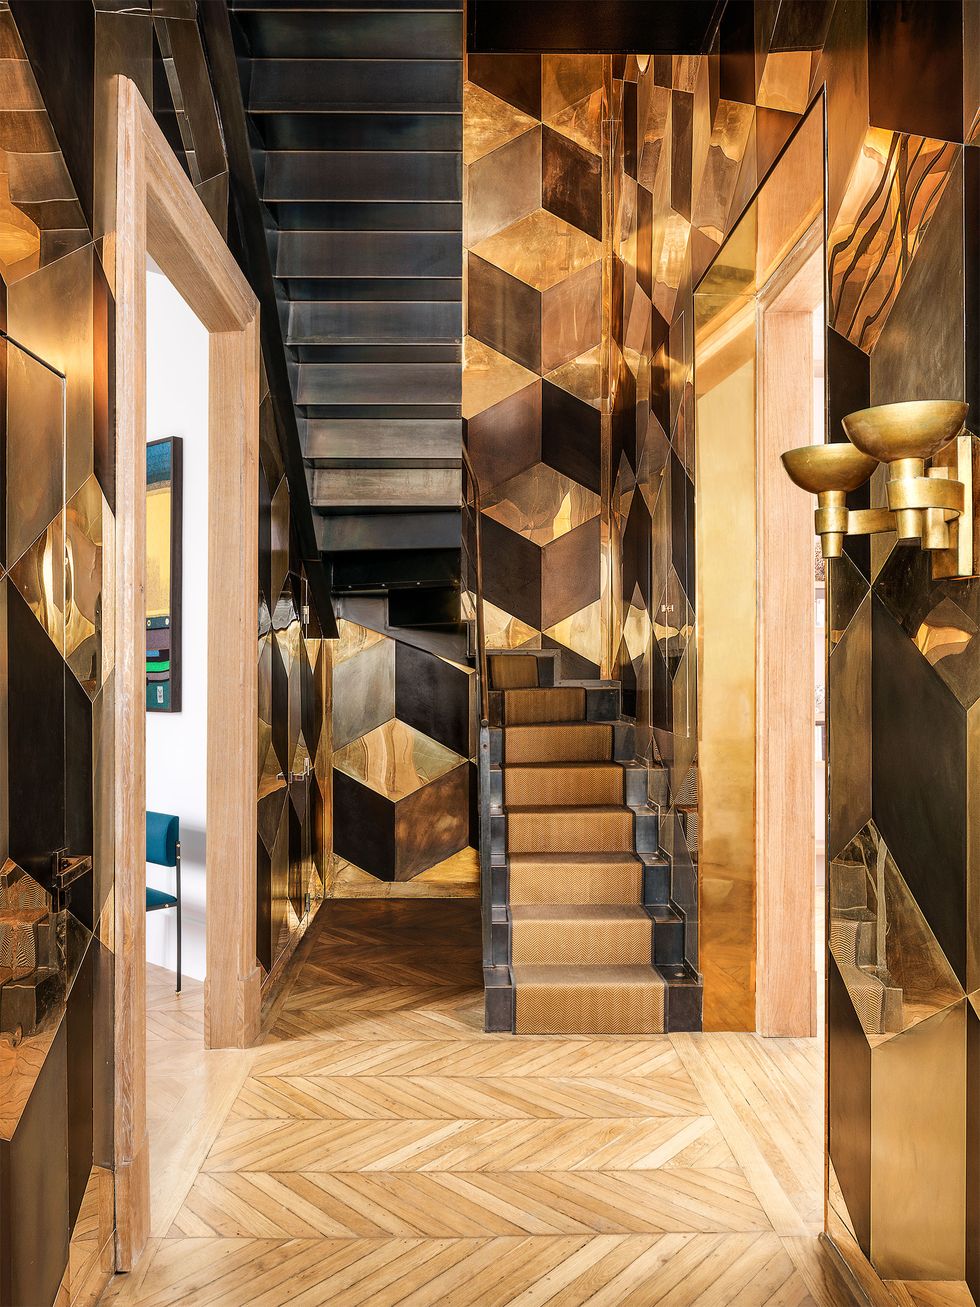 un hall d'escalier a des murs recouverts de plaques de laiton polies et patinées selon un motif de cubes imbriqués, deux appliques en laiton, un plancher en bois à motif de chevrons